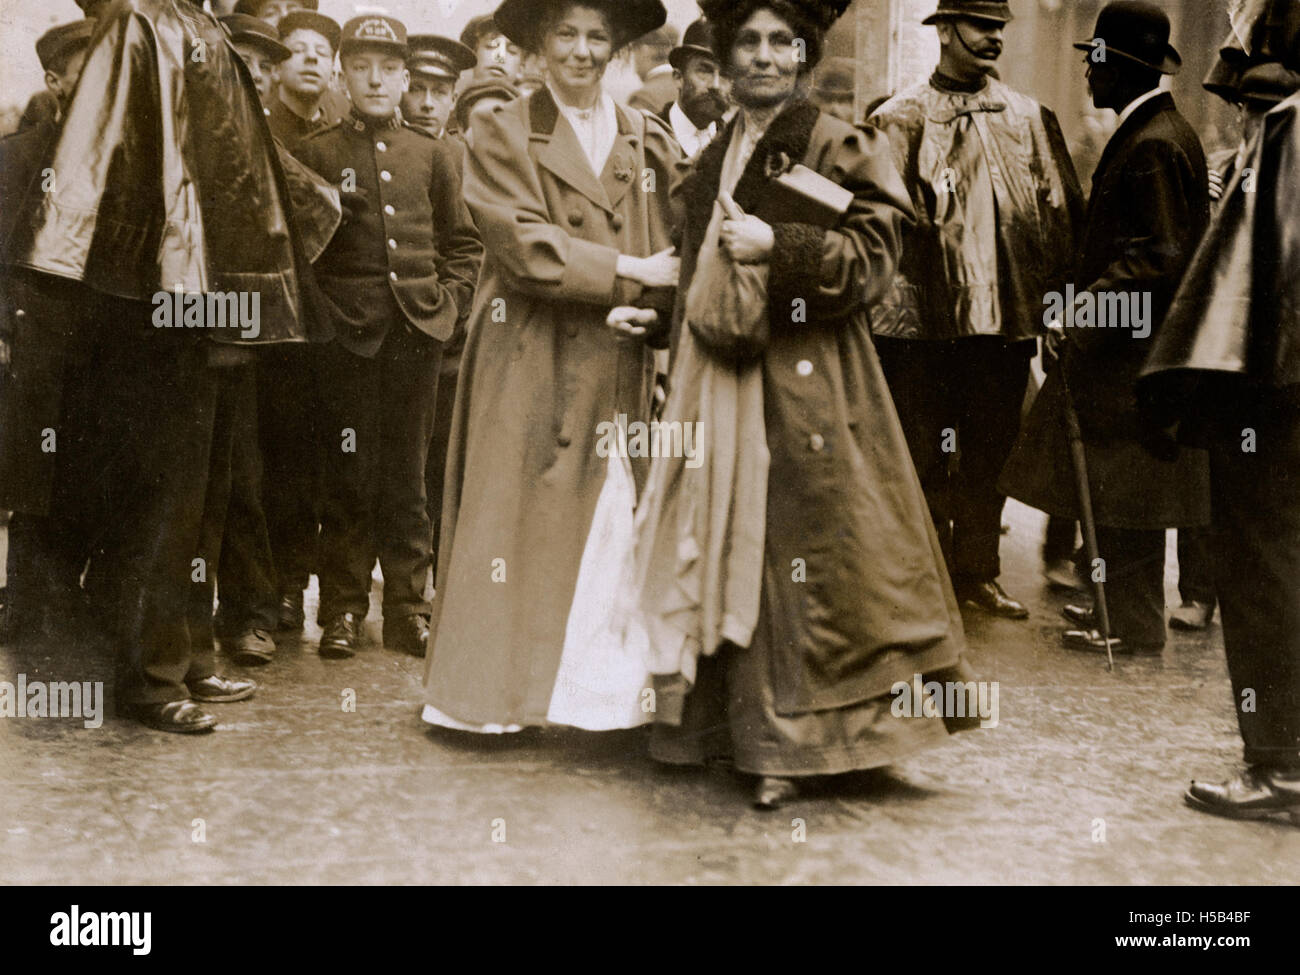 Christabel and Emmeline Pankhurst, c.1910. Stock Photo